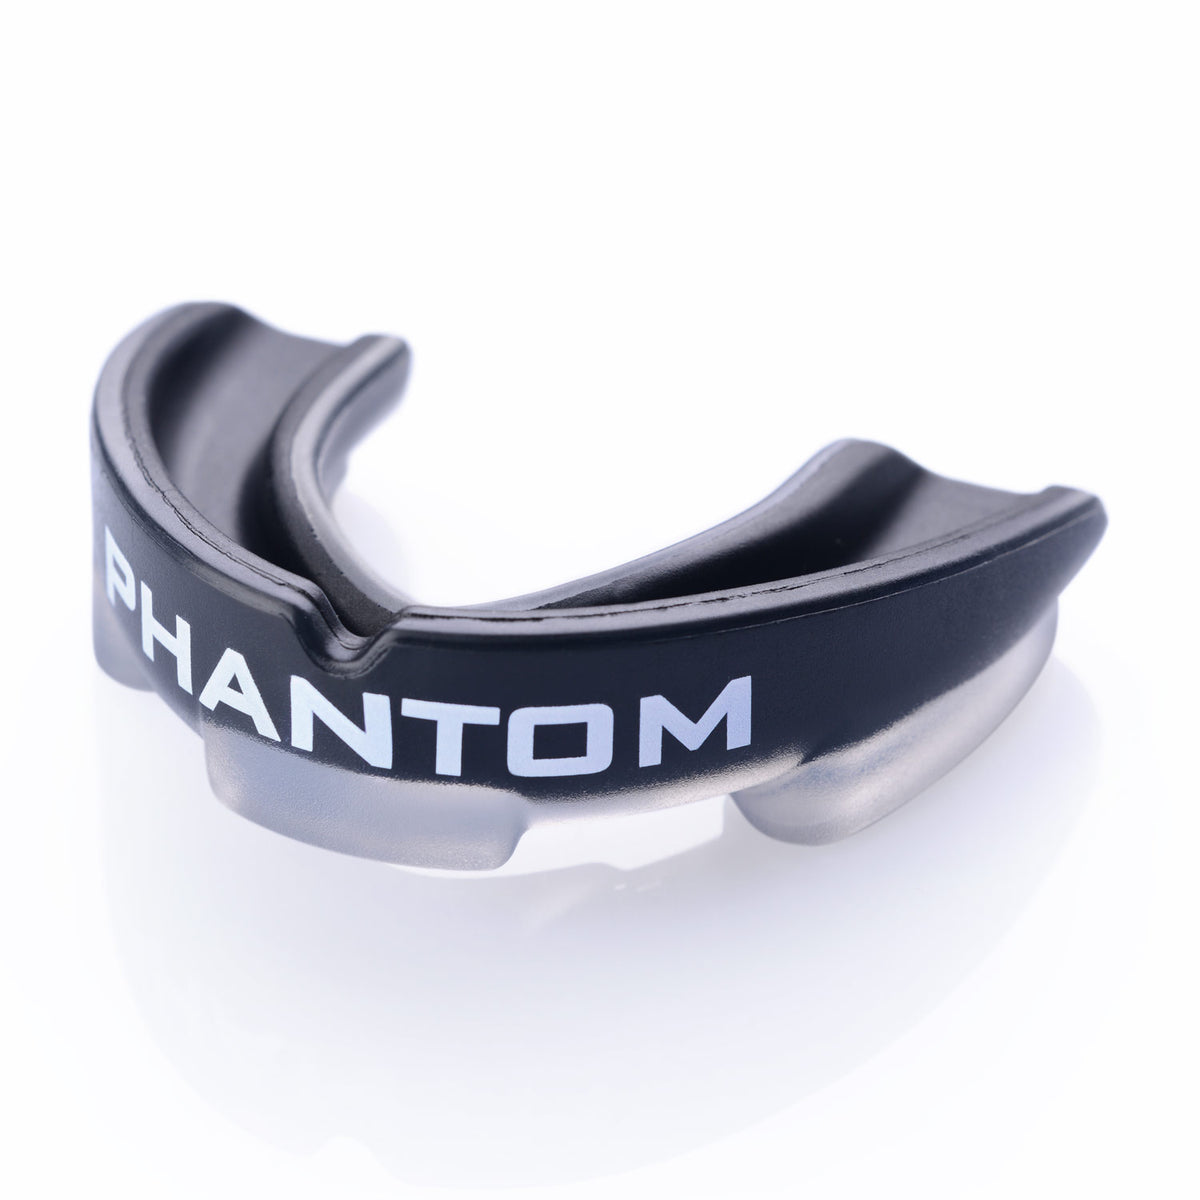 Phantom Impact fogvédő fekete színben harcművészetekhez